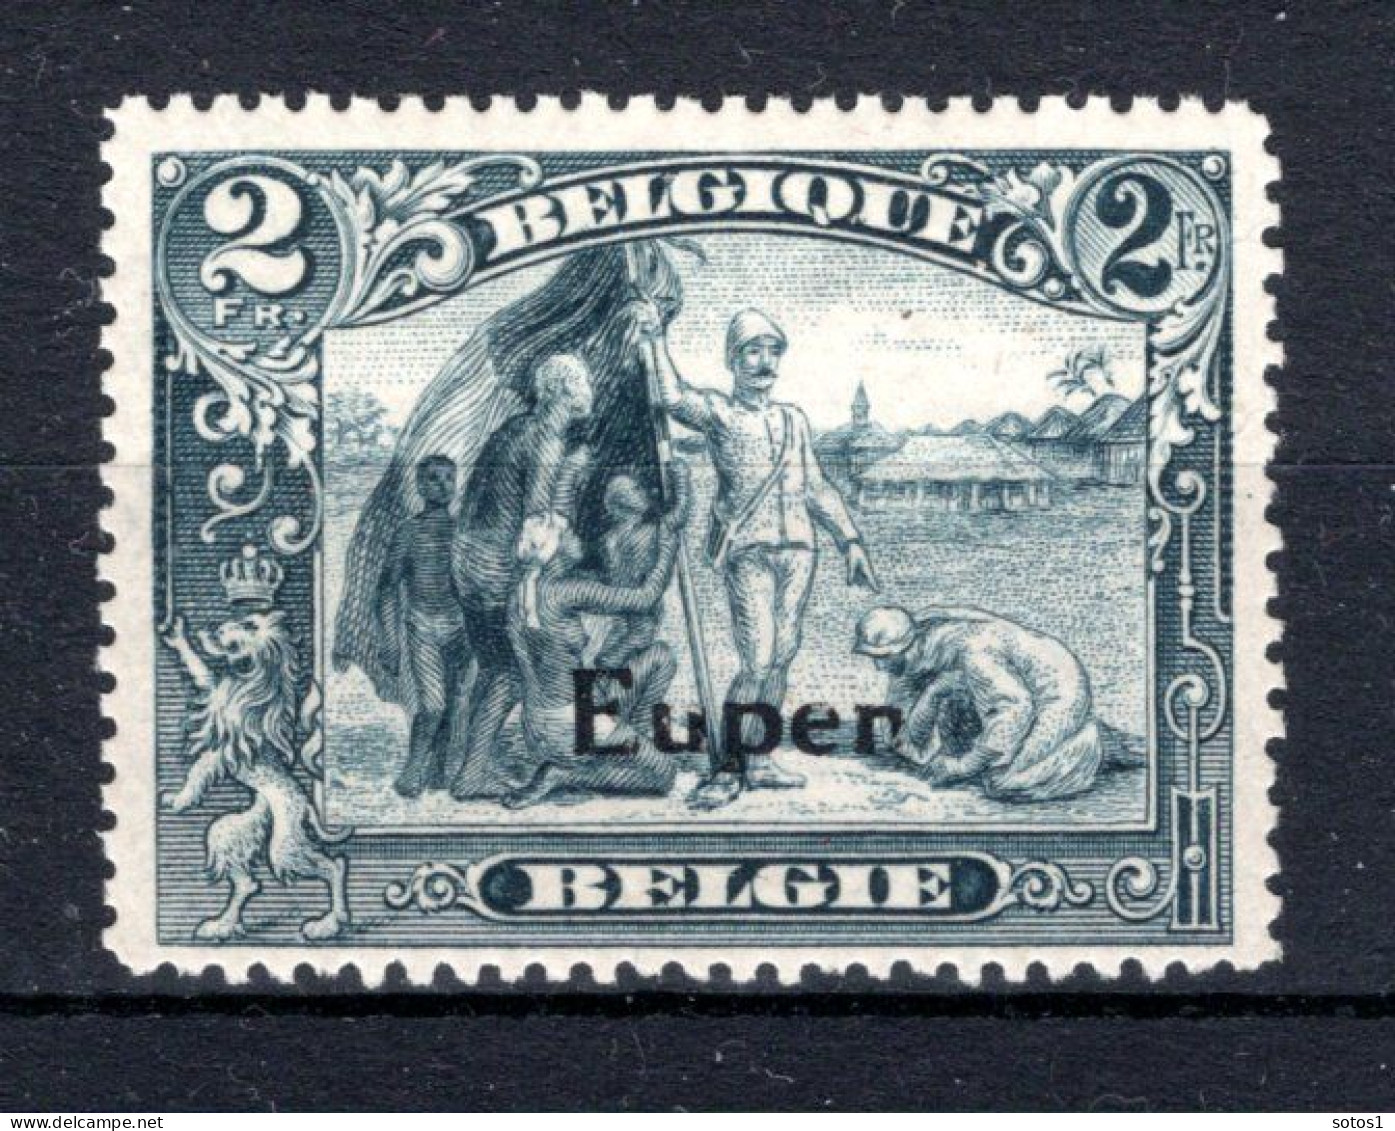 OC98 MNH 1920 - Postzegels Met Opdruk Eupen - Sot - OC55/105 Eupen & Malmédy